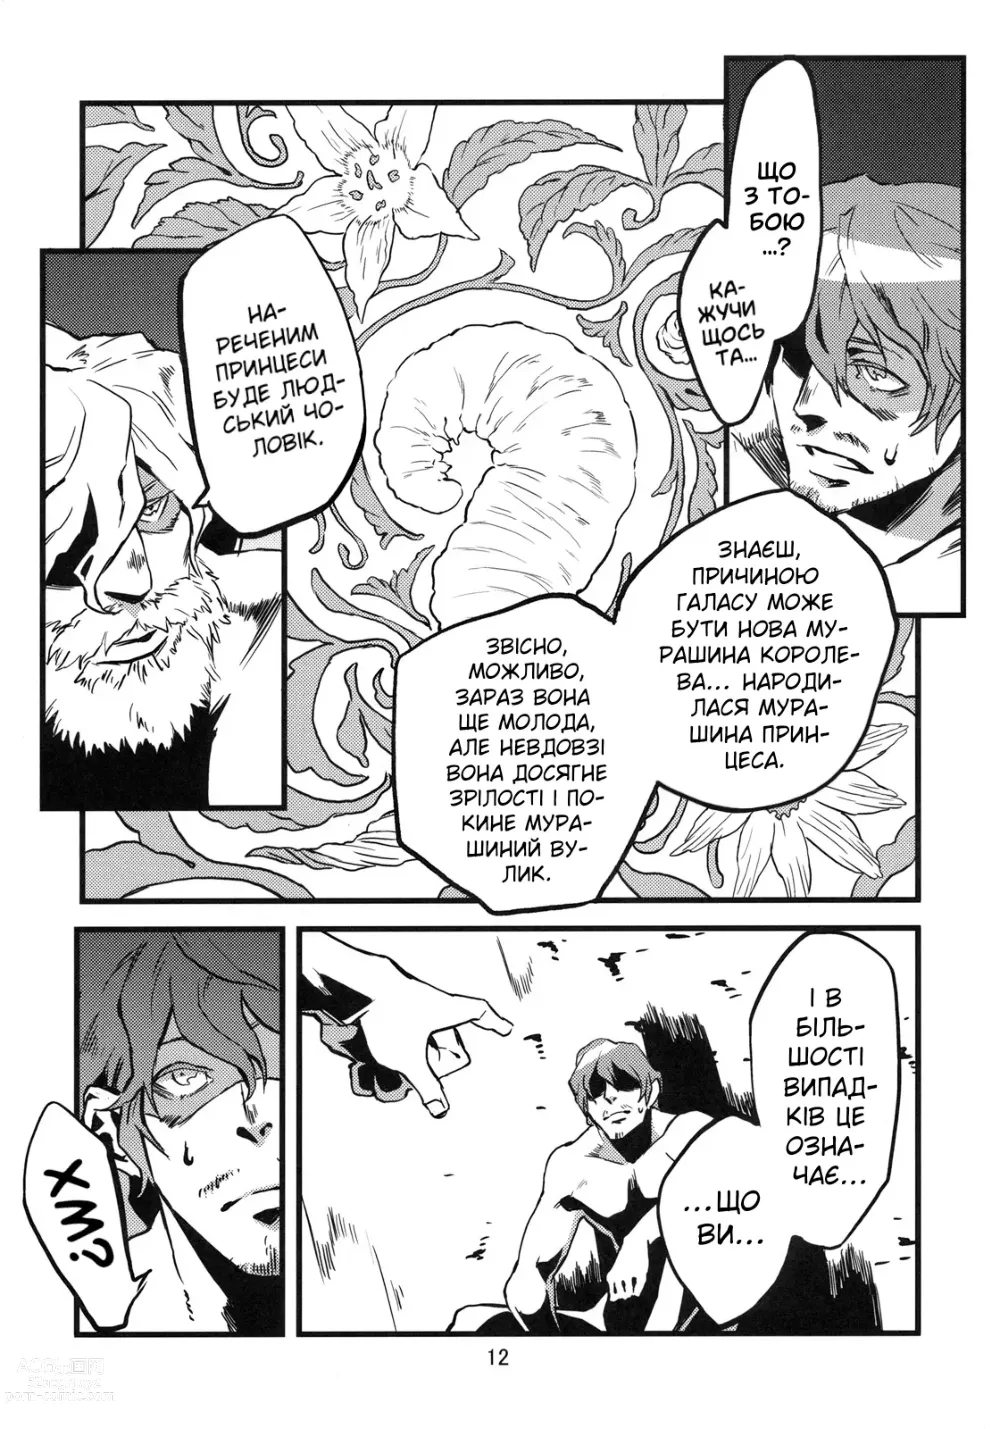 Page 13 of doujinshi Кохання між людиною та демоном (мурахою) 2